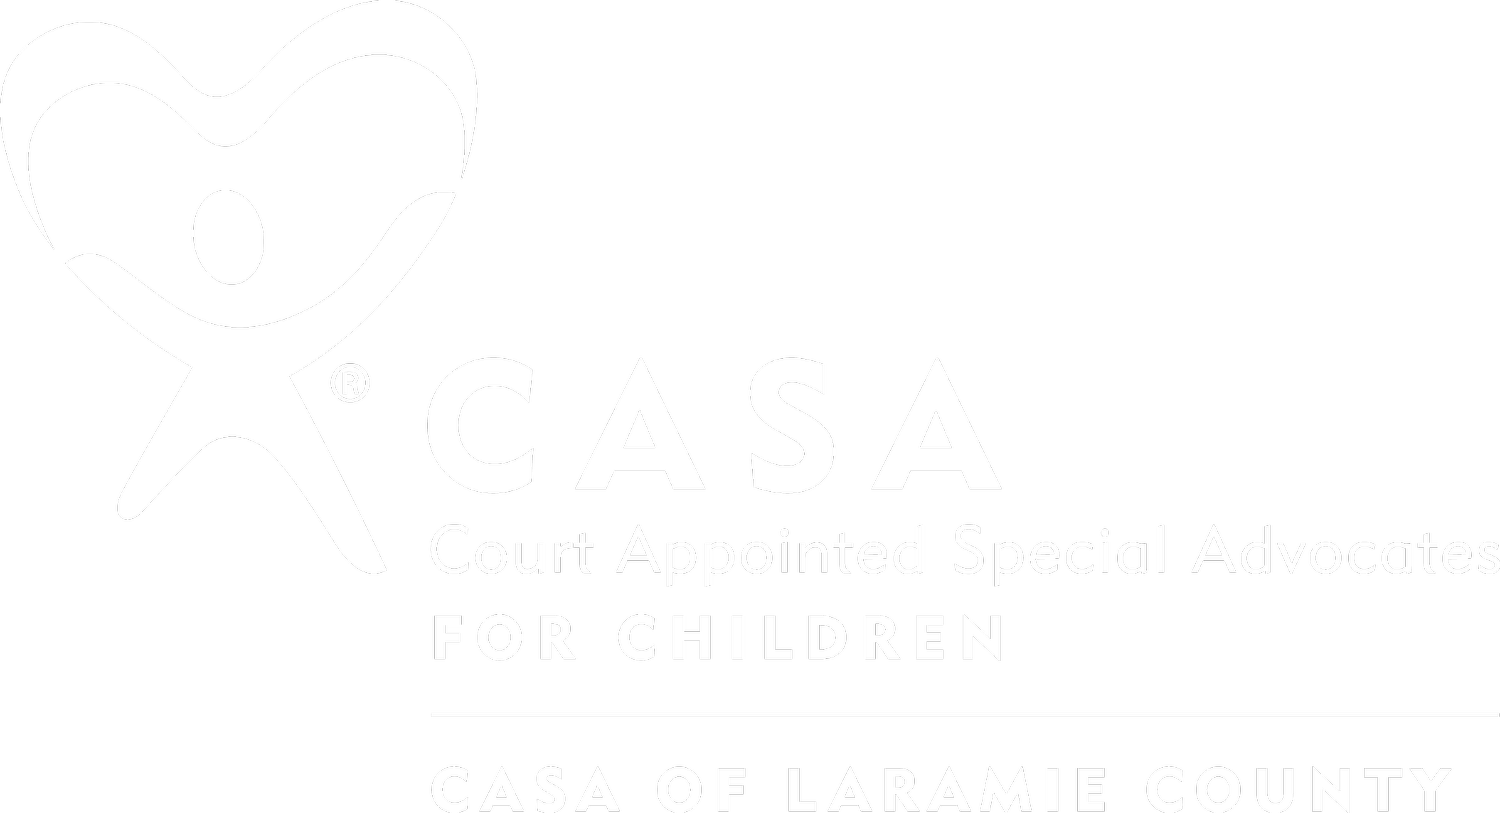 CASA of Laramie County